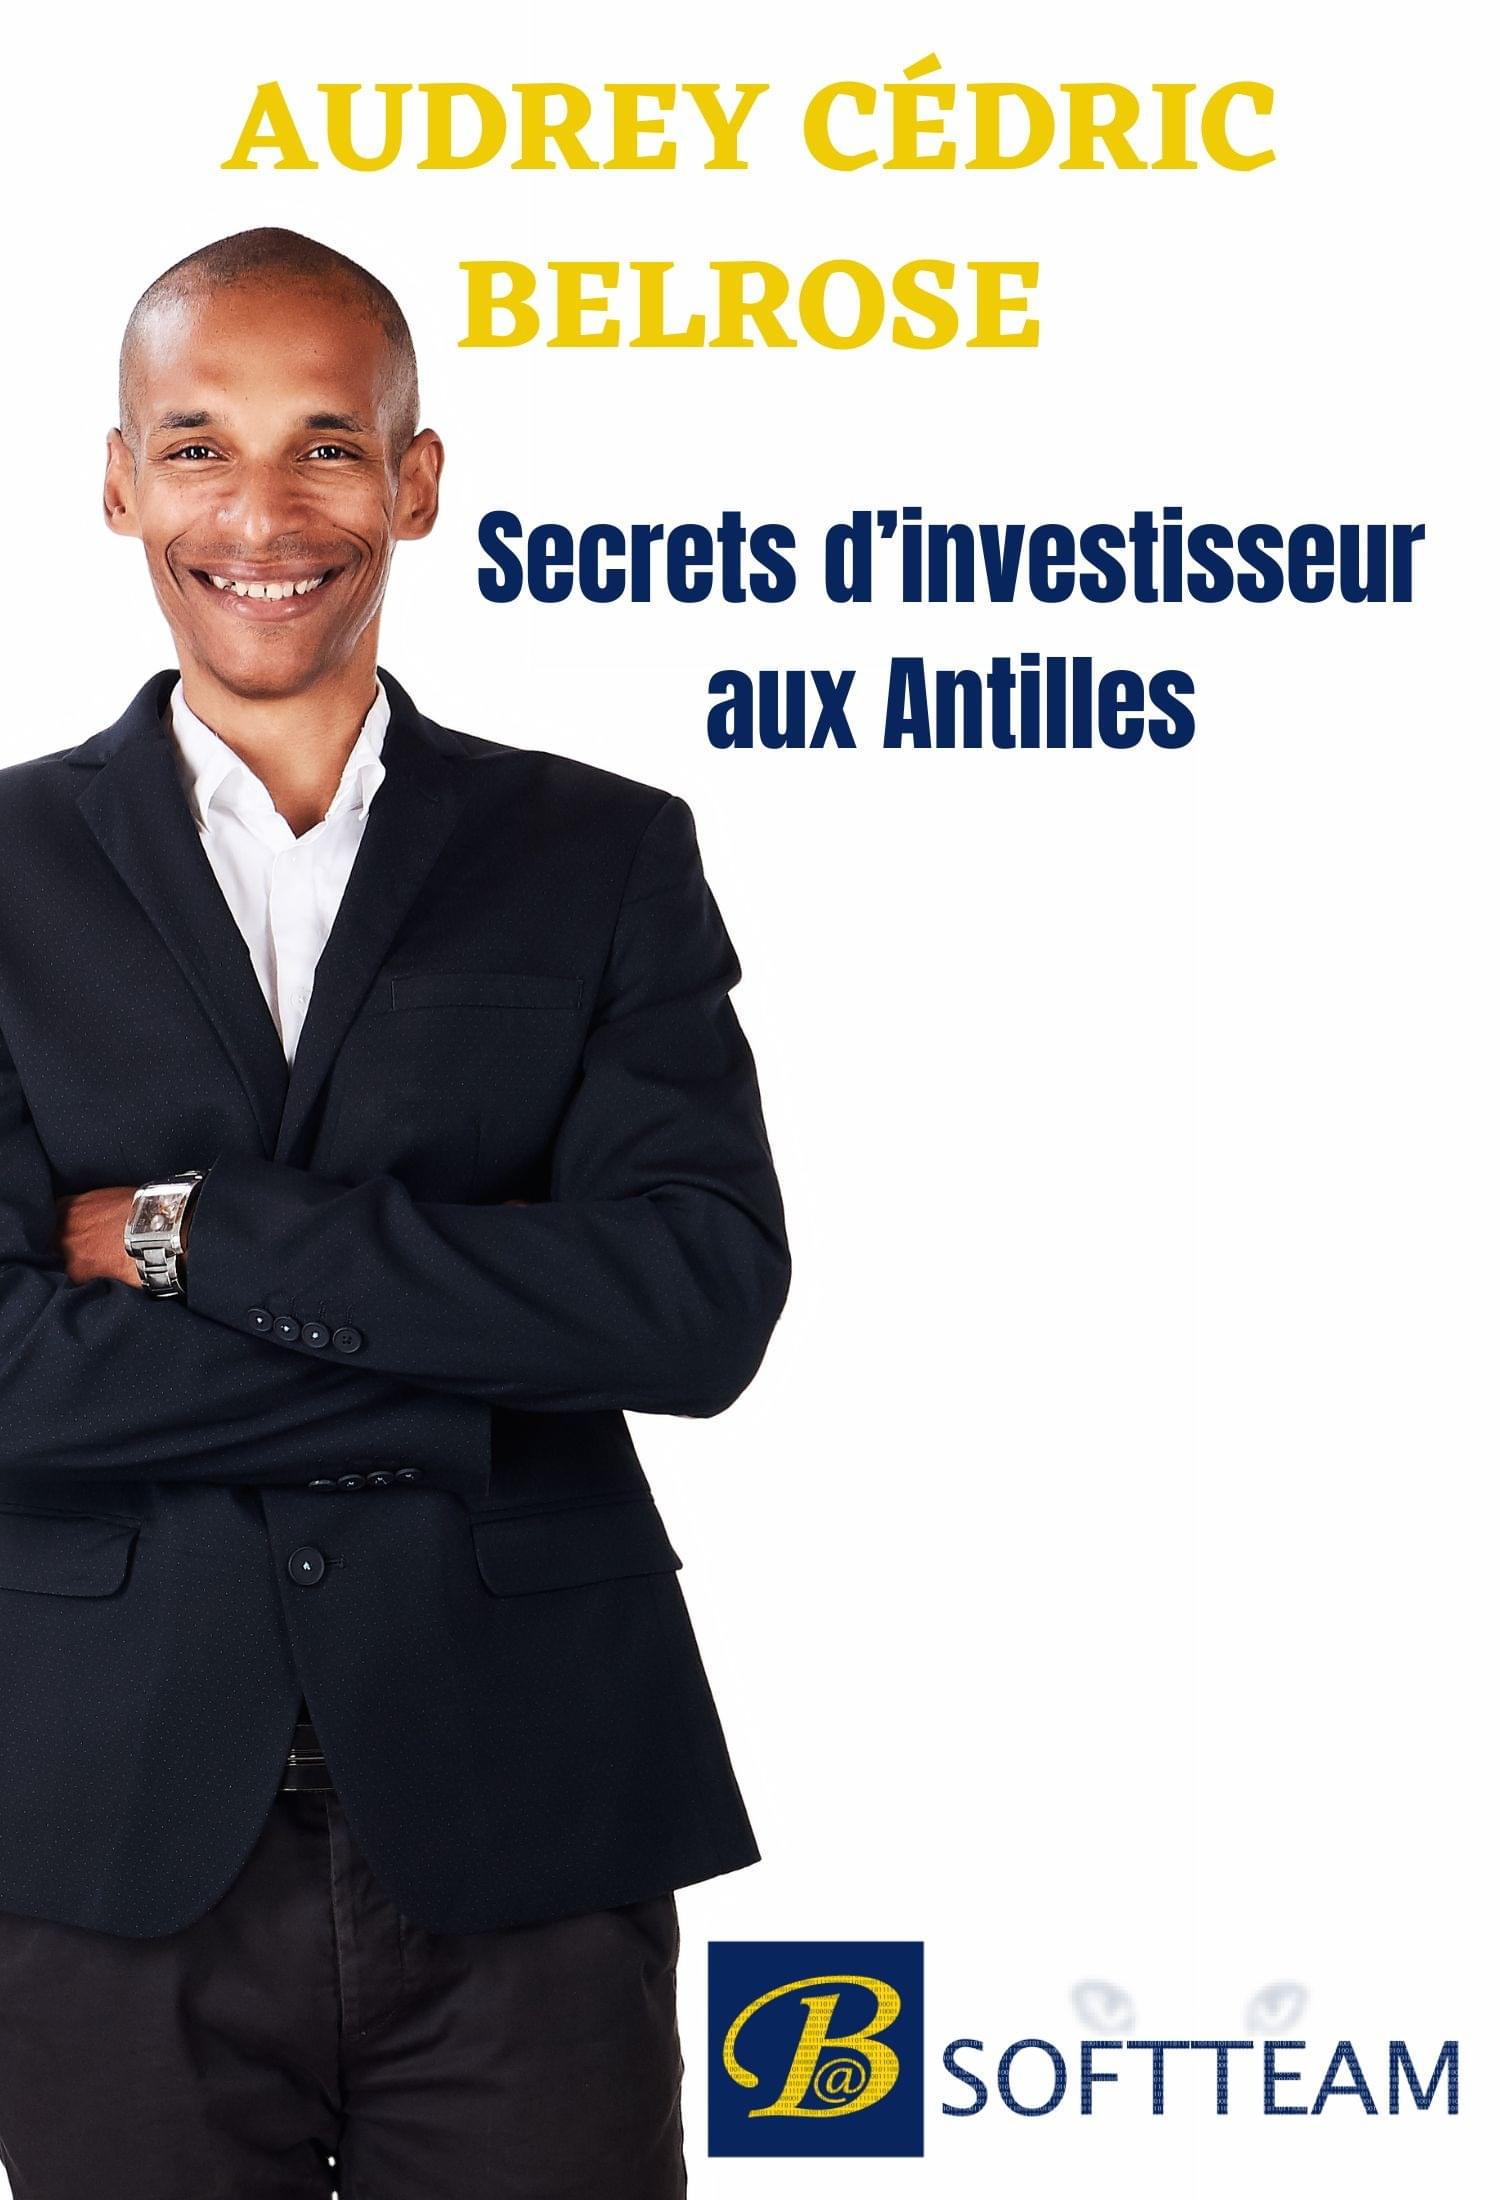 Extrait Livre Secrets Investisseur aux Antilles par Audrey Belrose